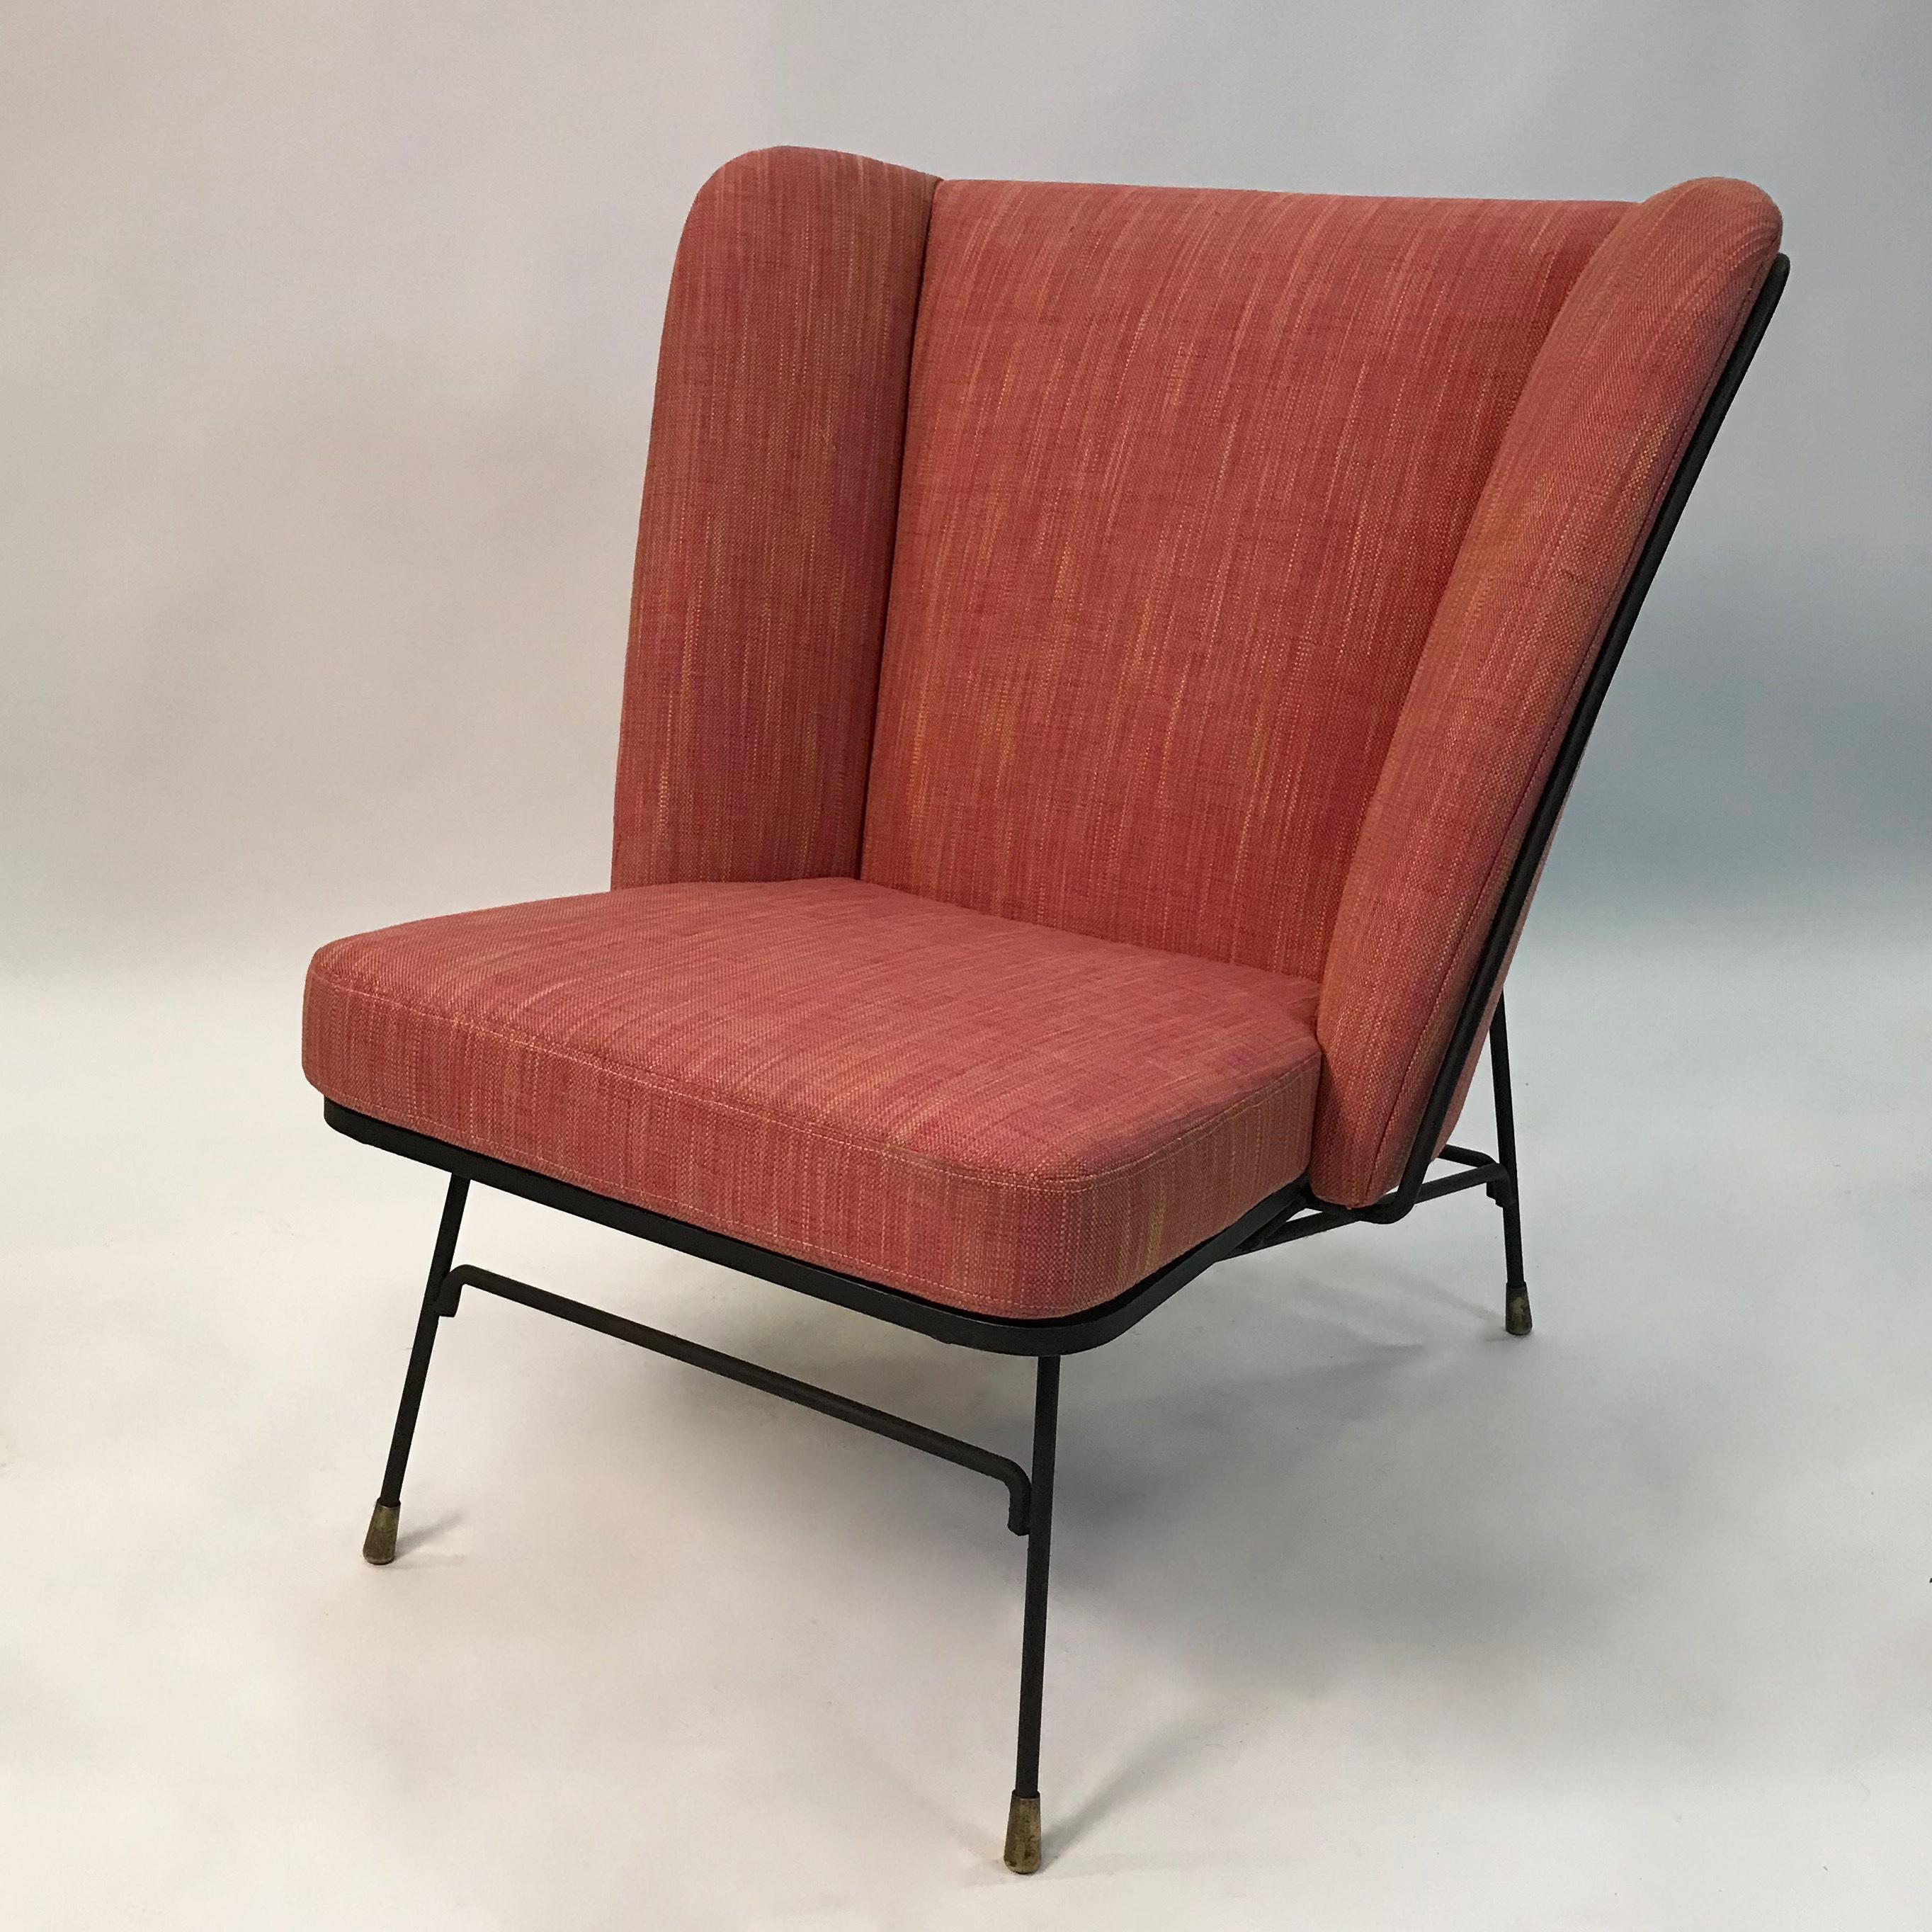 Ce fauteuil de salon haut, à dos ailé, de style moderne du milieu du siècle, présente un cadre minimal en fer forgé, nouvellement tapissé d'un mélange de lin et de coton framboise. Est attribué à Adrian Pearsall.